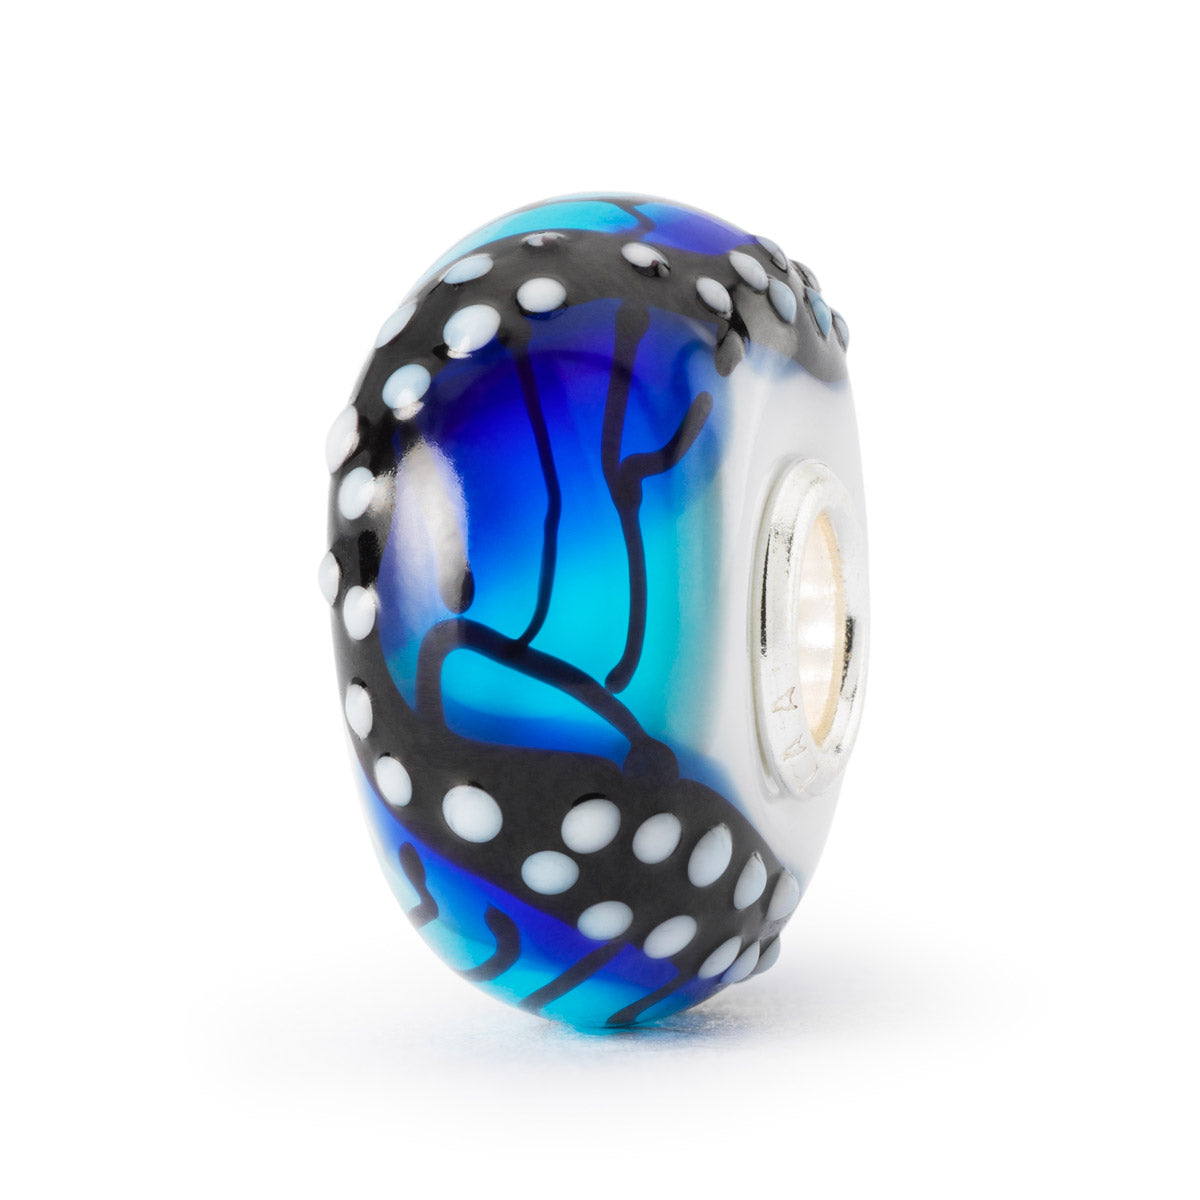 Ali della Serenità è un beads in vetro Trollbeads su cui è disegnata una farfalla blu con sfumature celesti.